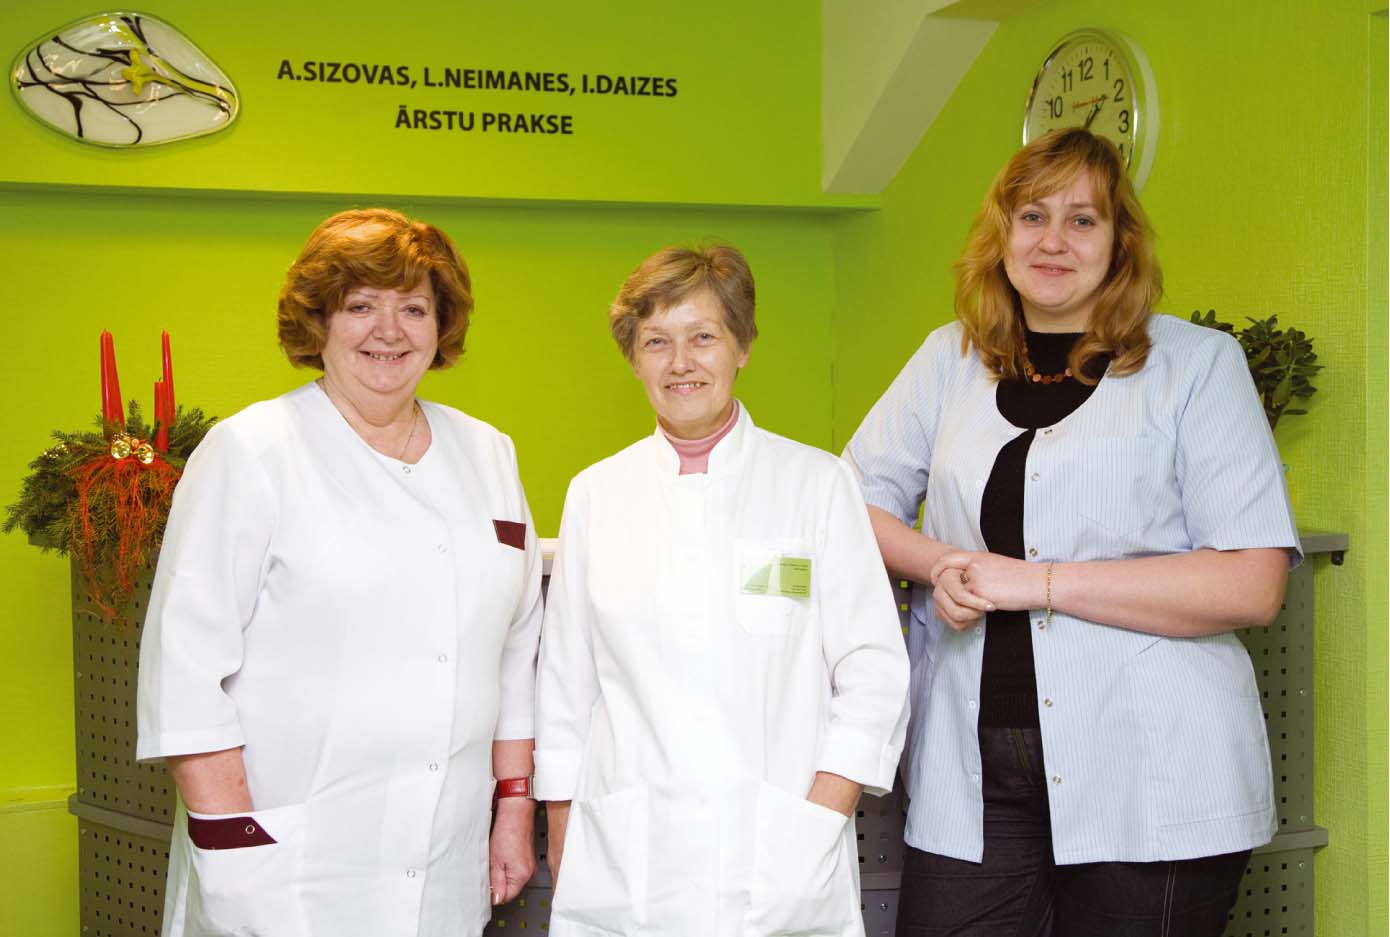 No kreisās: Anita Sizova, Ligita Neimane un Ieva Daize – viņu uzvārdu pirmie burti izveidojuši liktenīgu kombināciju D.N.S.